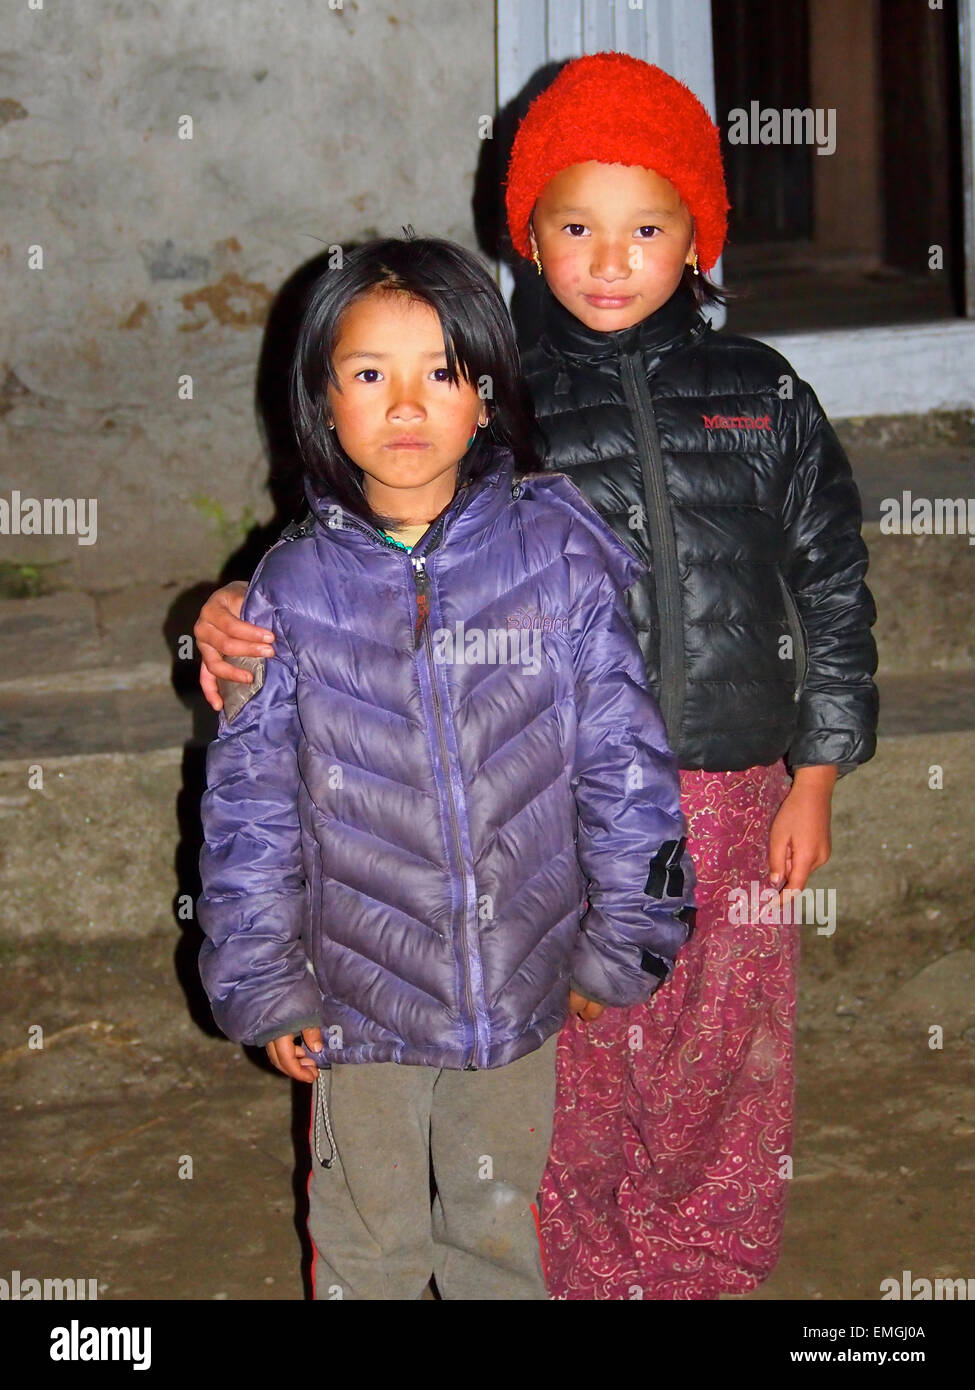 Les jeunes enfants népalais pauvres Lukla au Népal Asie Banque D'Images